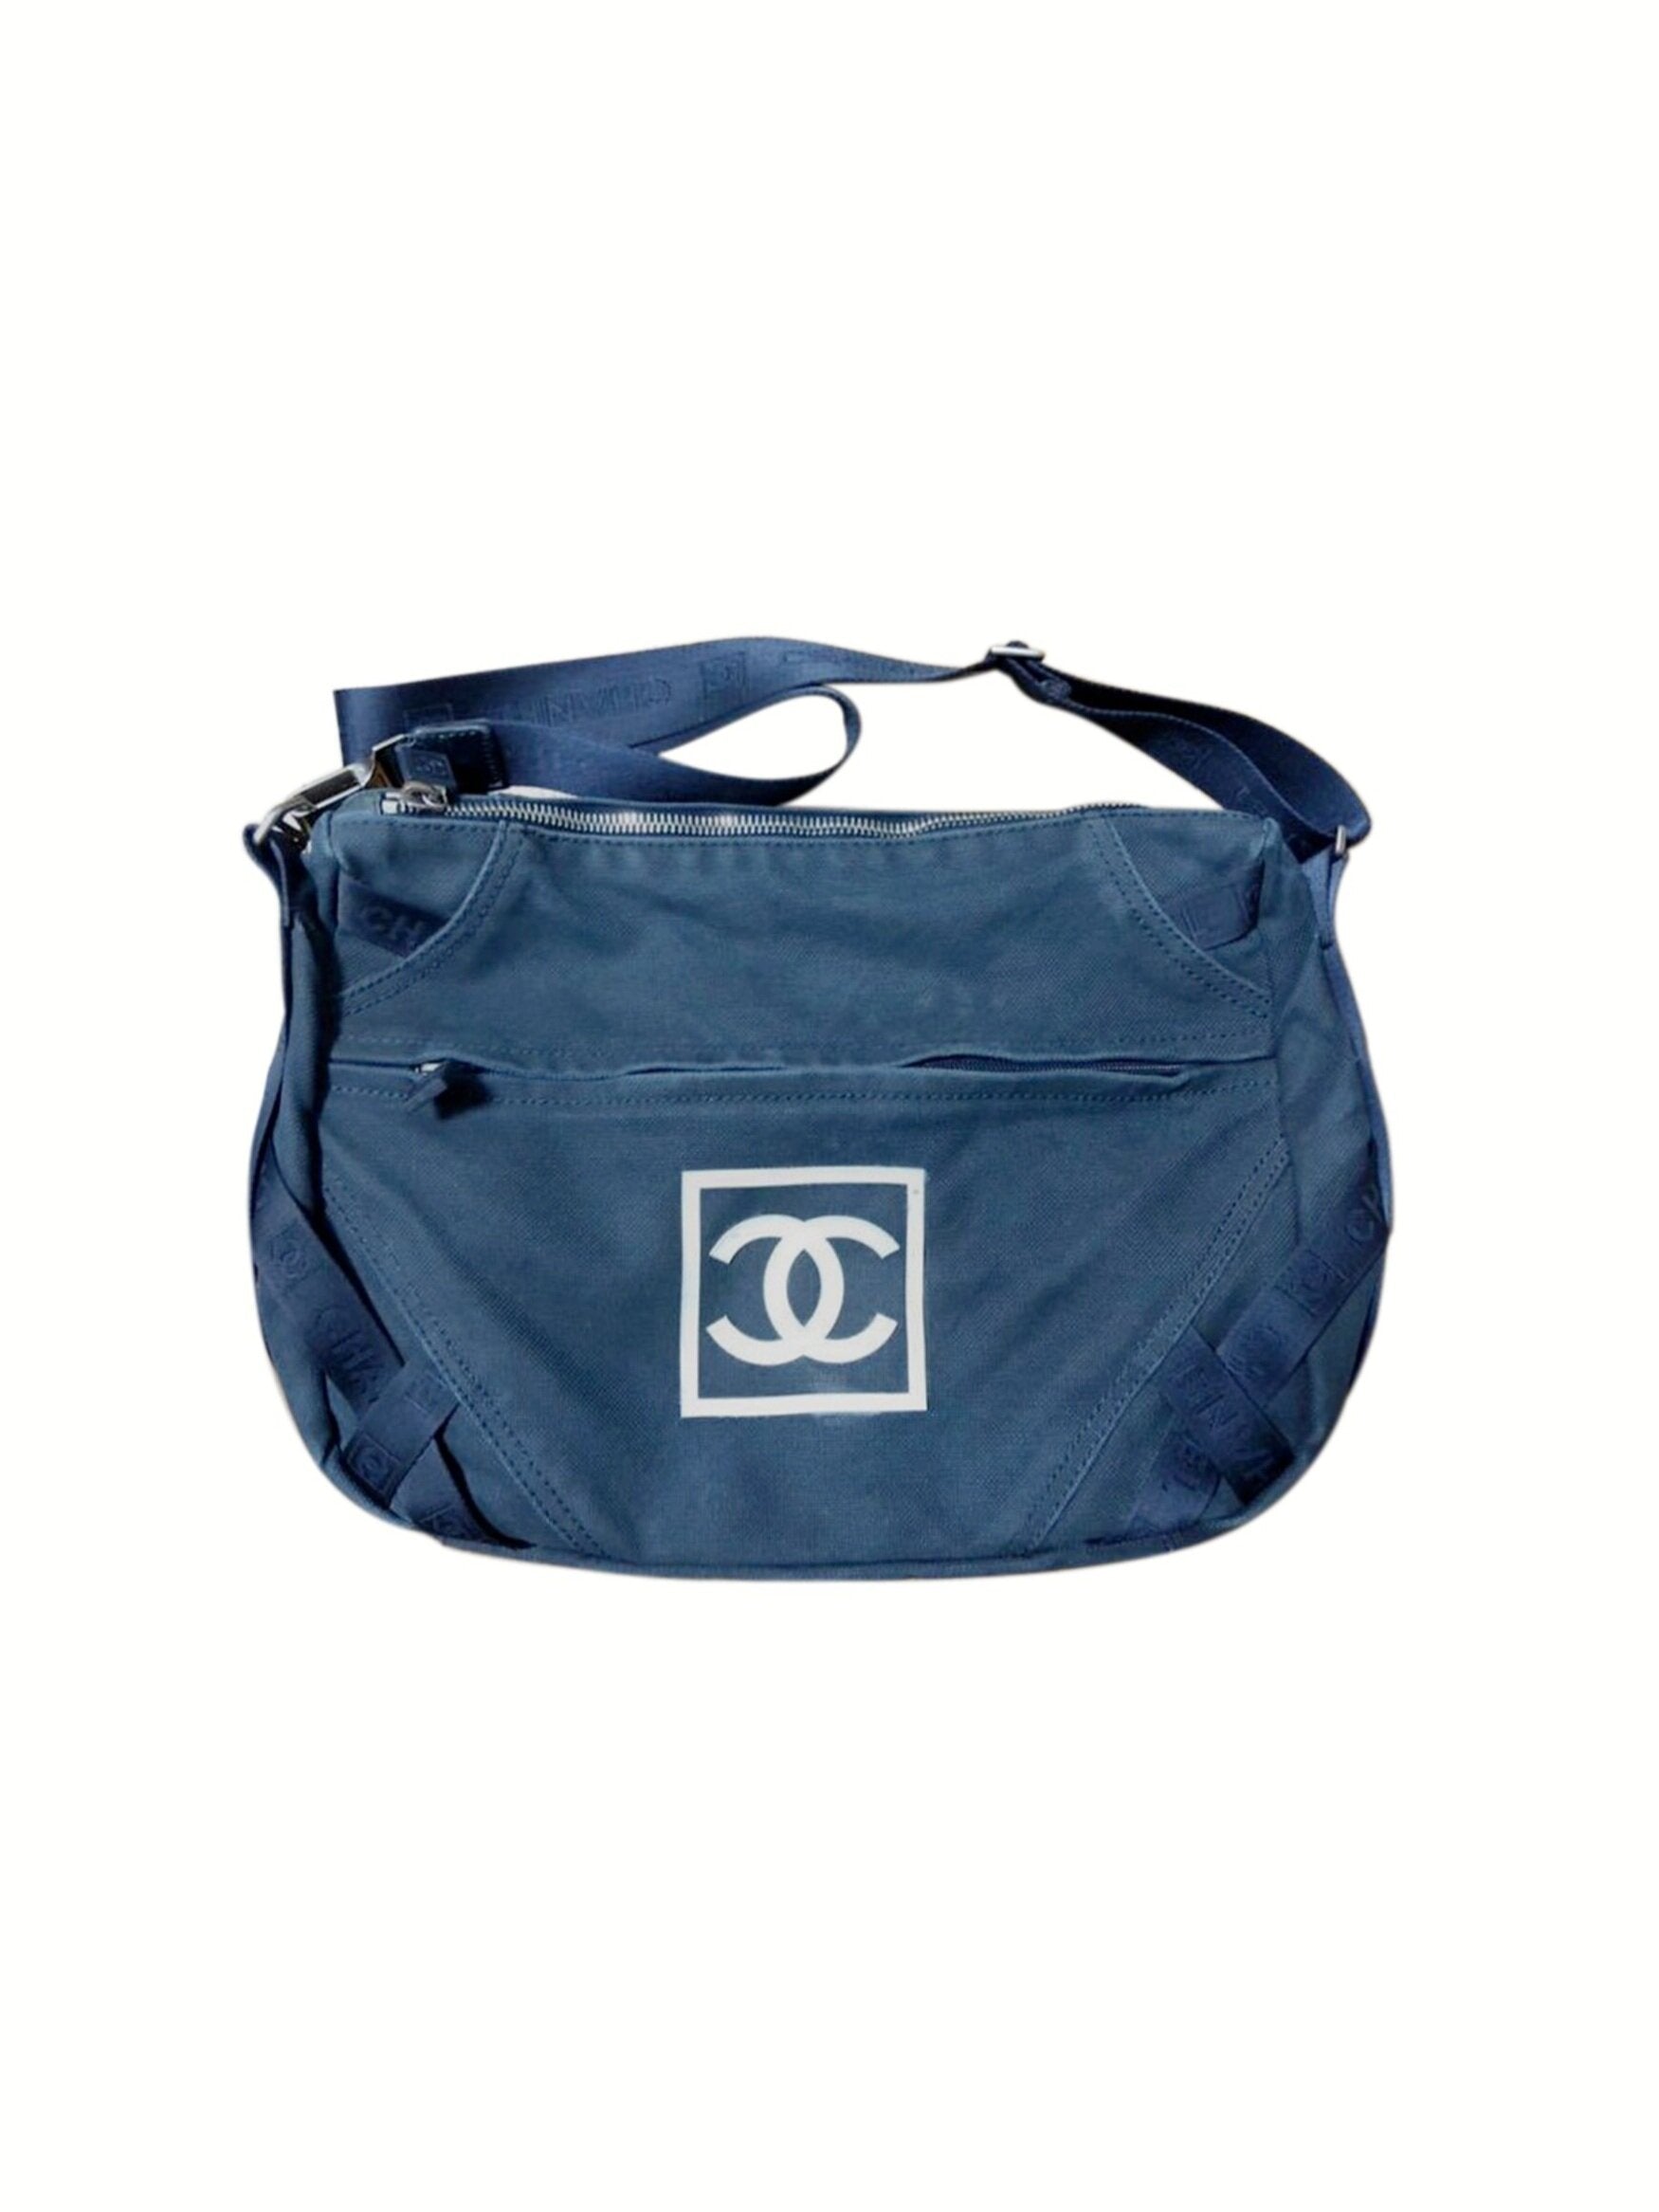 Chanel Sports Navy Denim Shoulder Bag · INTO